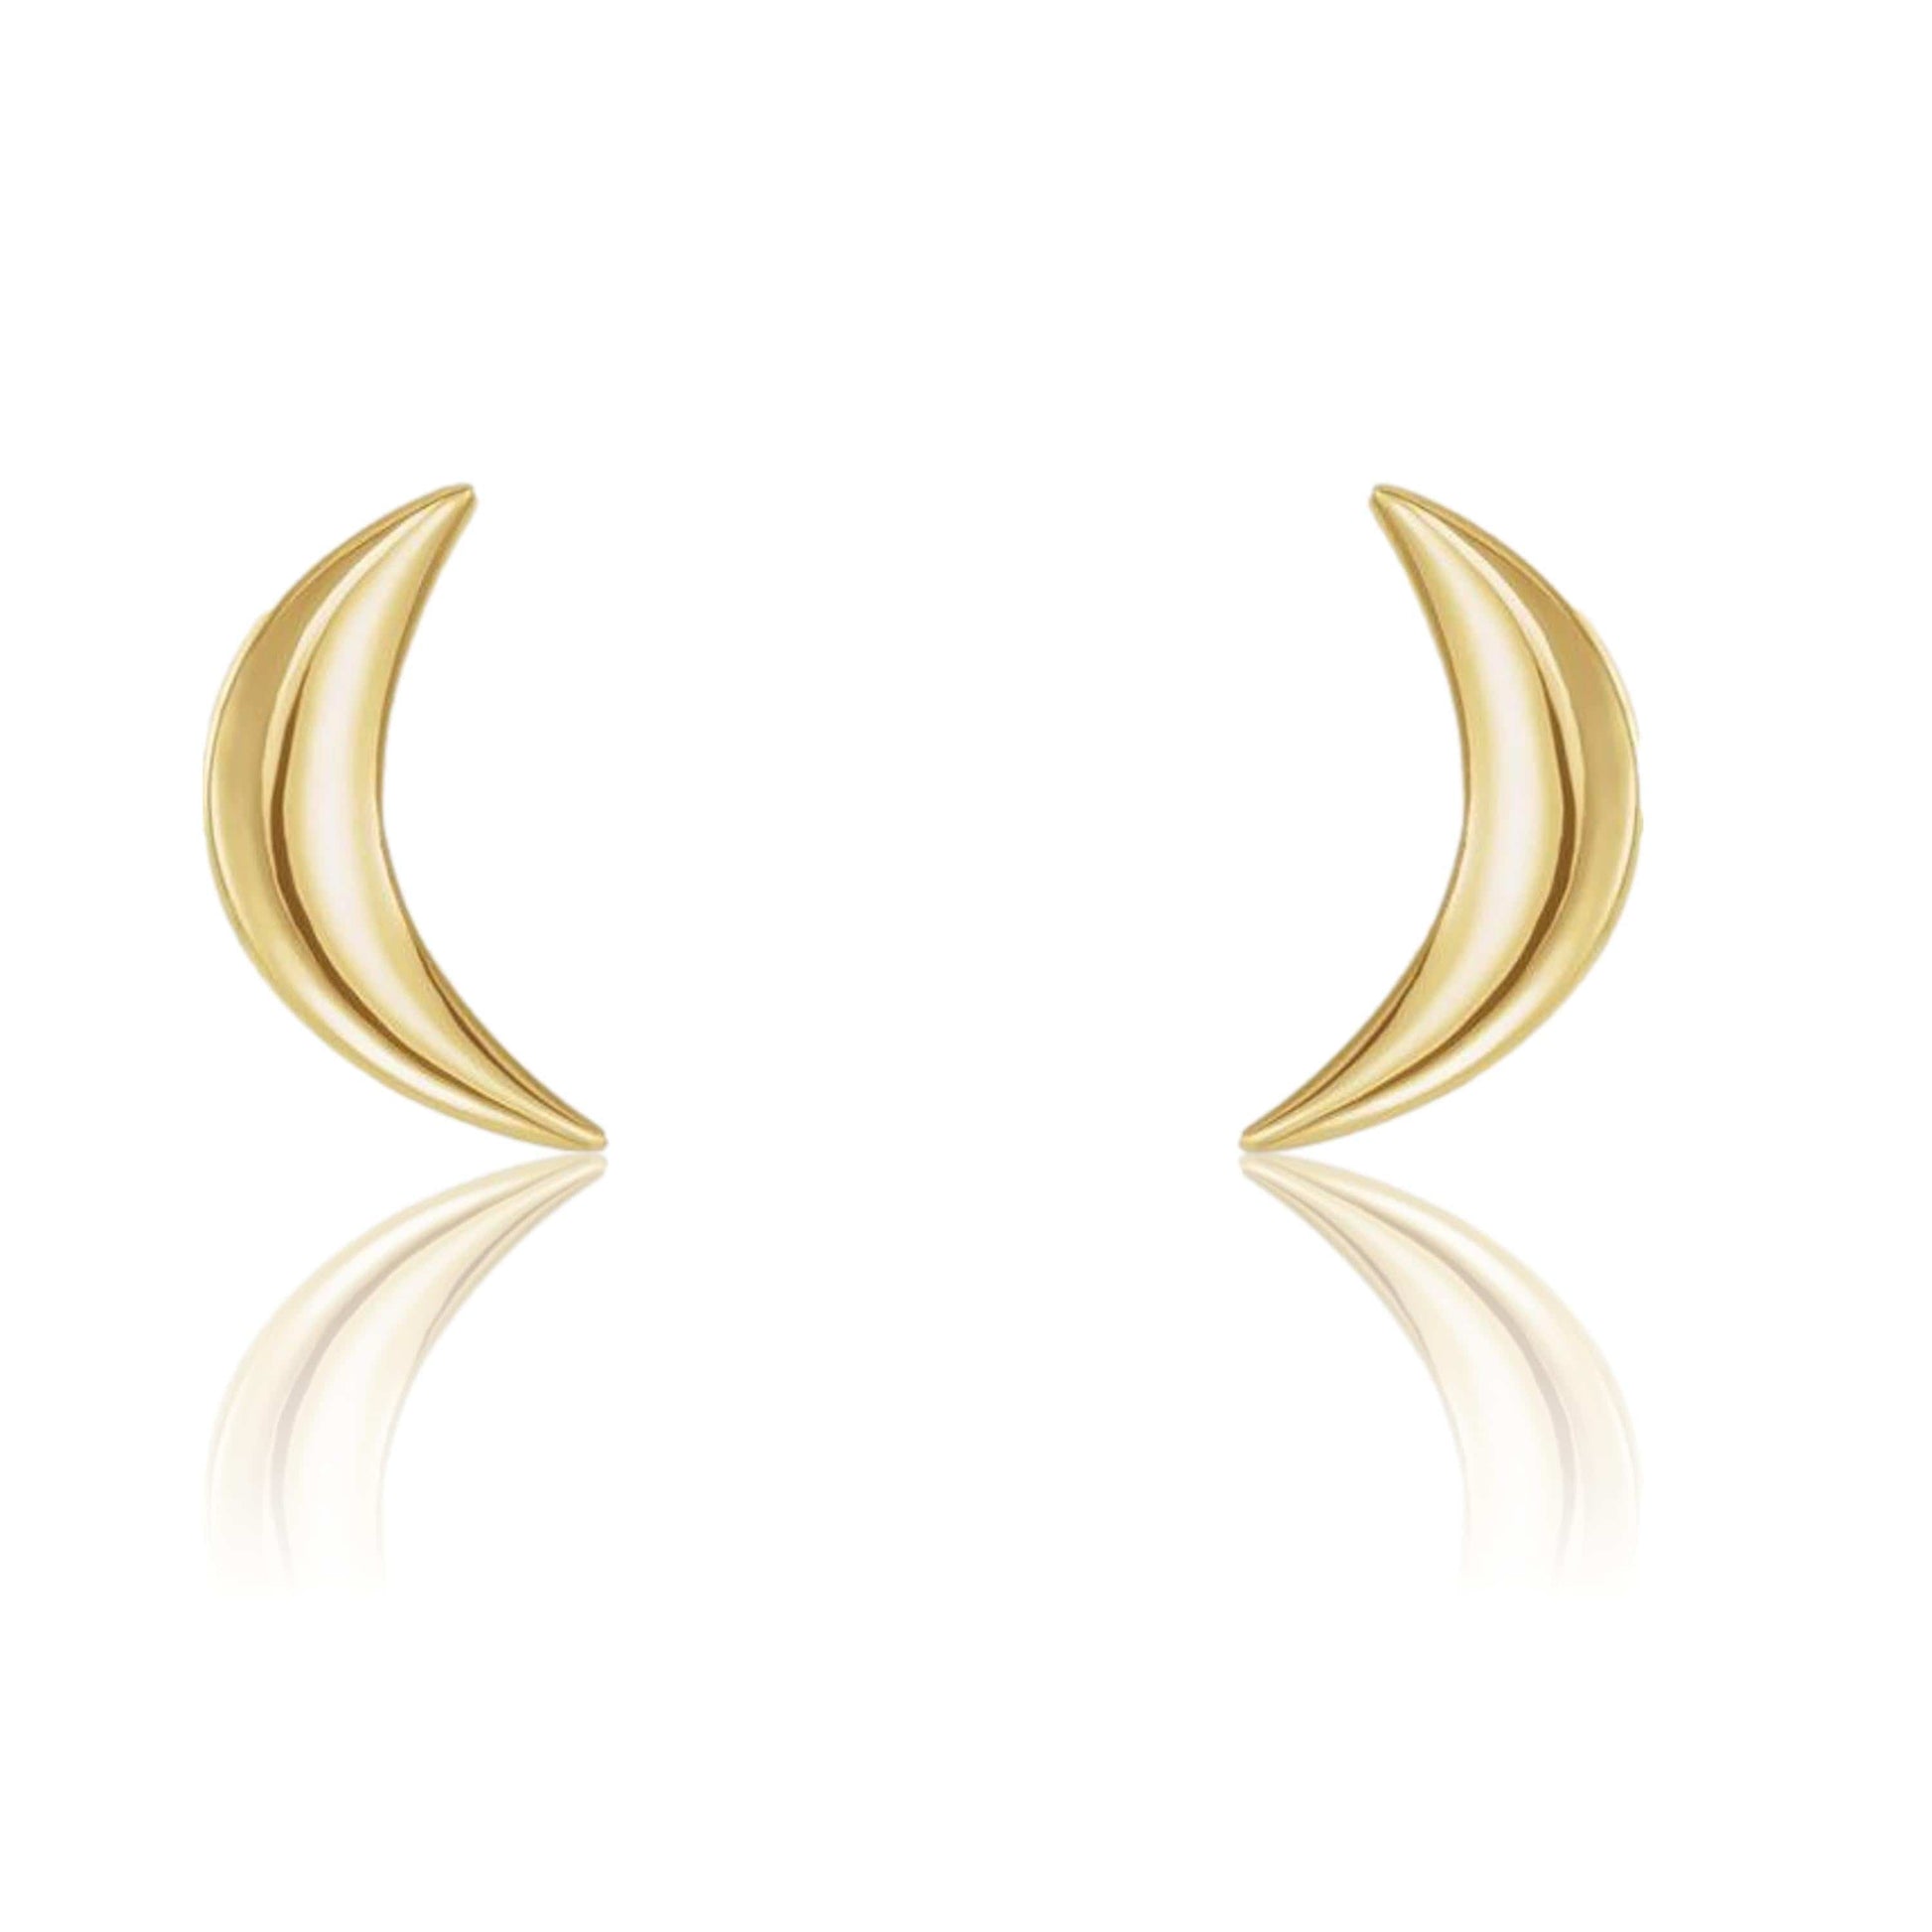 Crescent Moon Stud Earrings 14k Yellow Gold Earrings by Nodeform